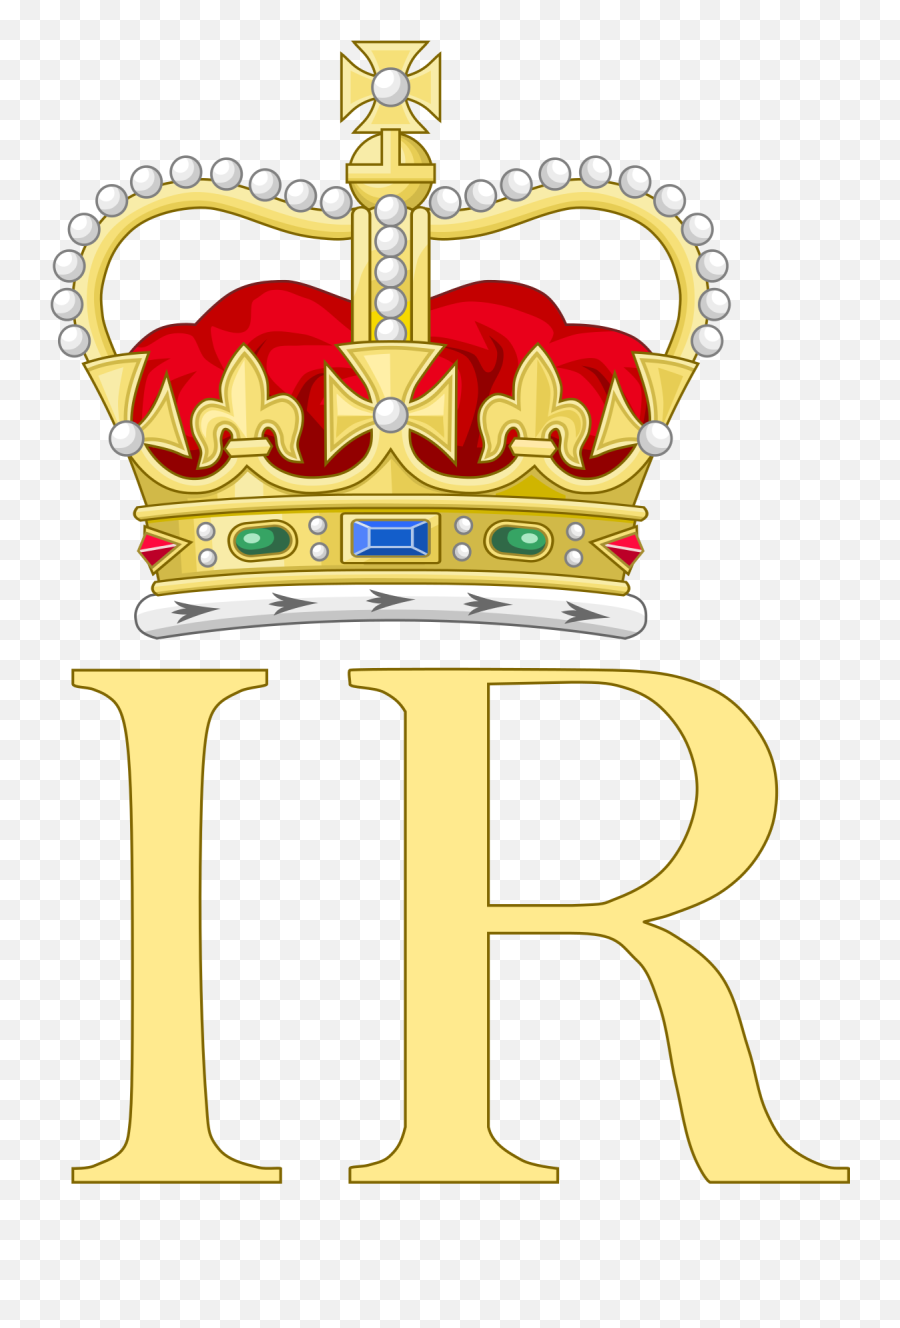 Royal Monogram Of King James I - Henry Viii Symbol Png,King James Logo